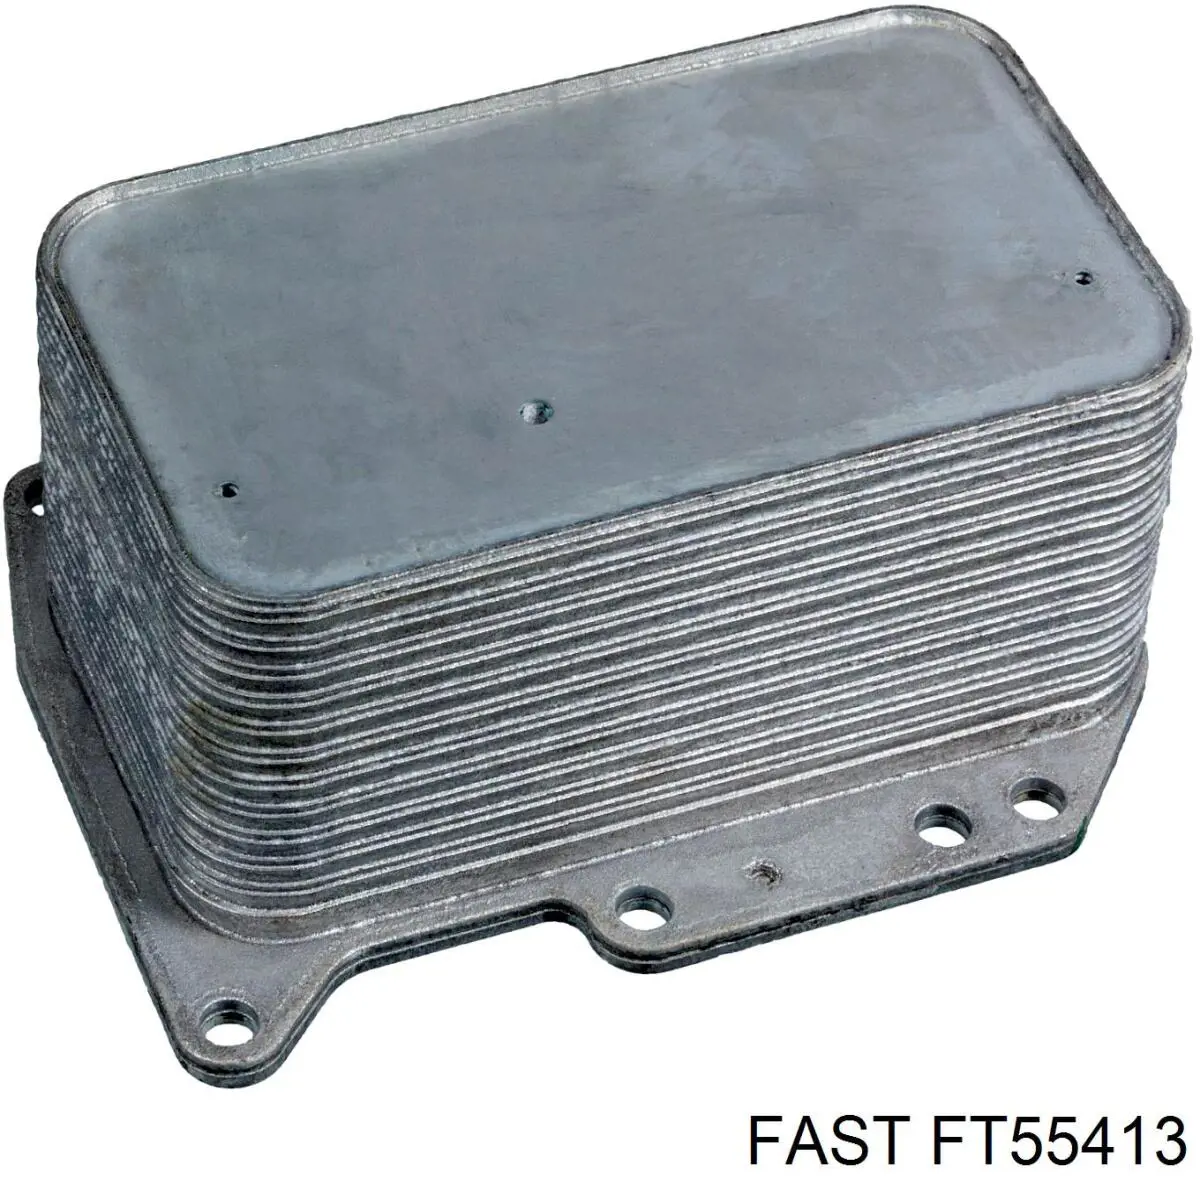 FT55413 Fast корпус масляного фильтра